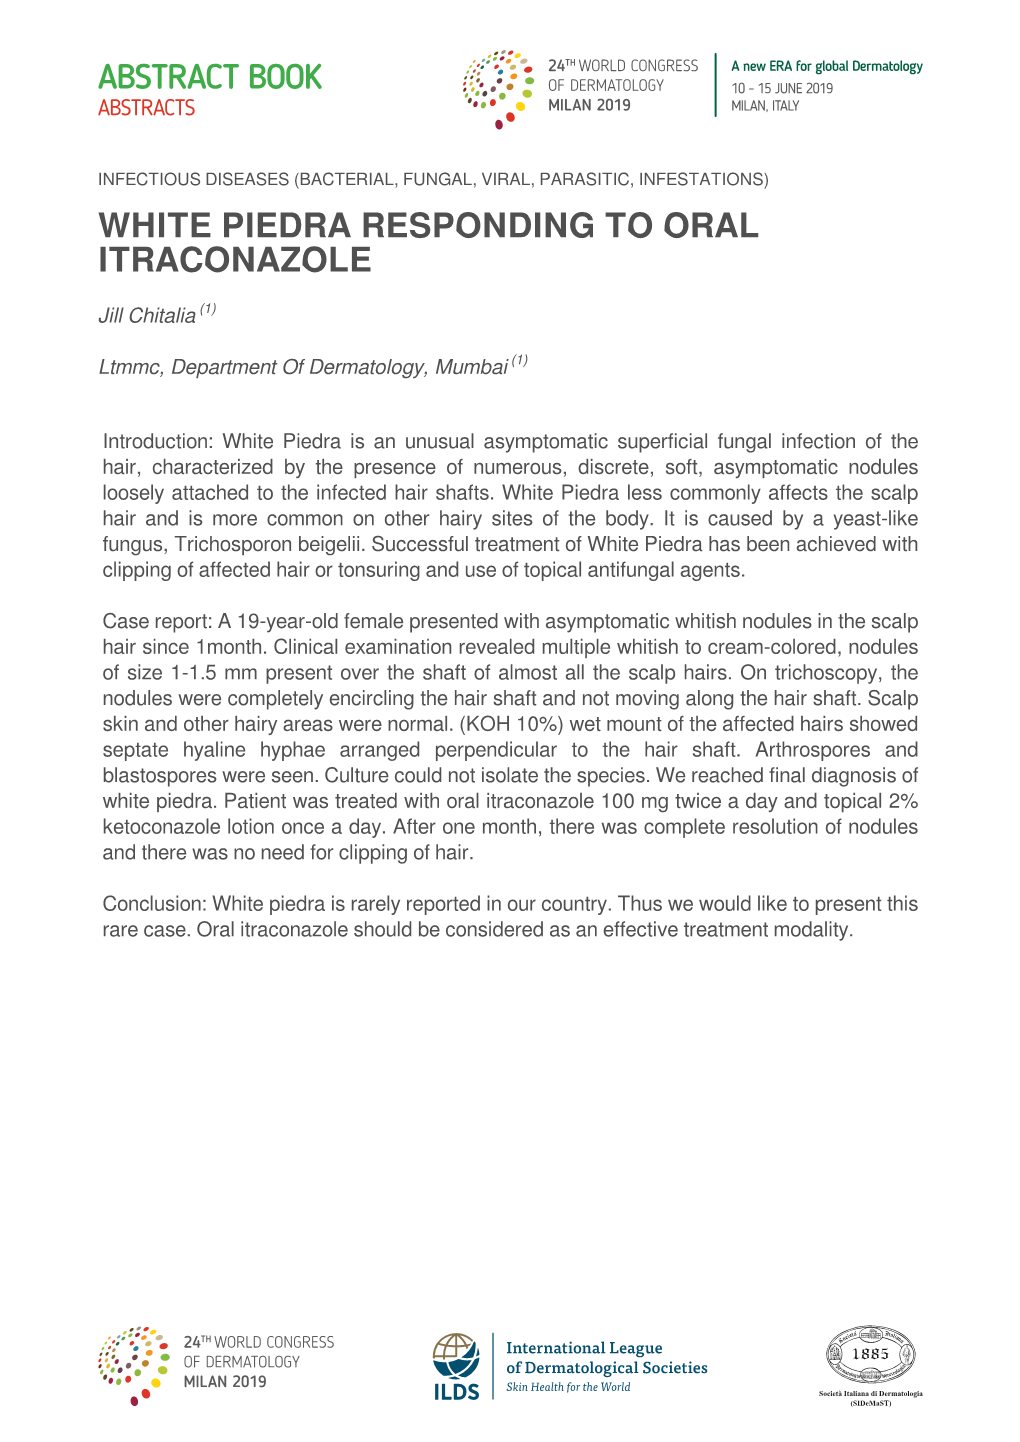 White Piedra Responding to Oral Itraconazole